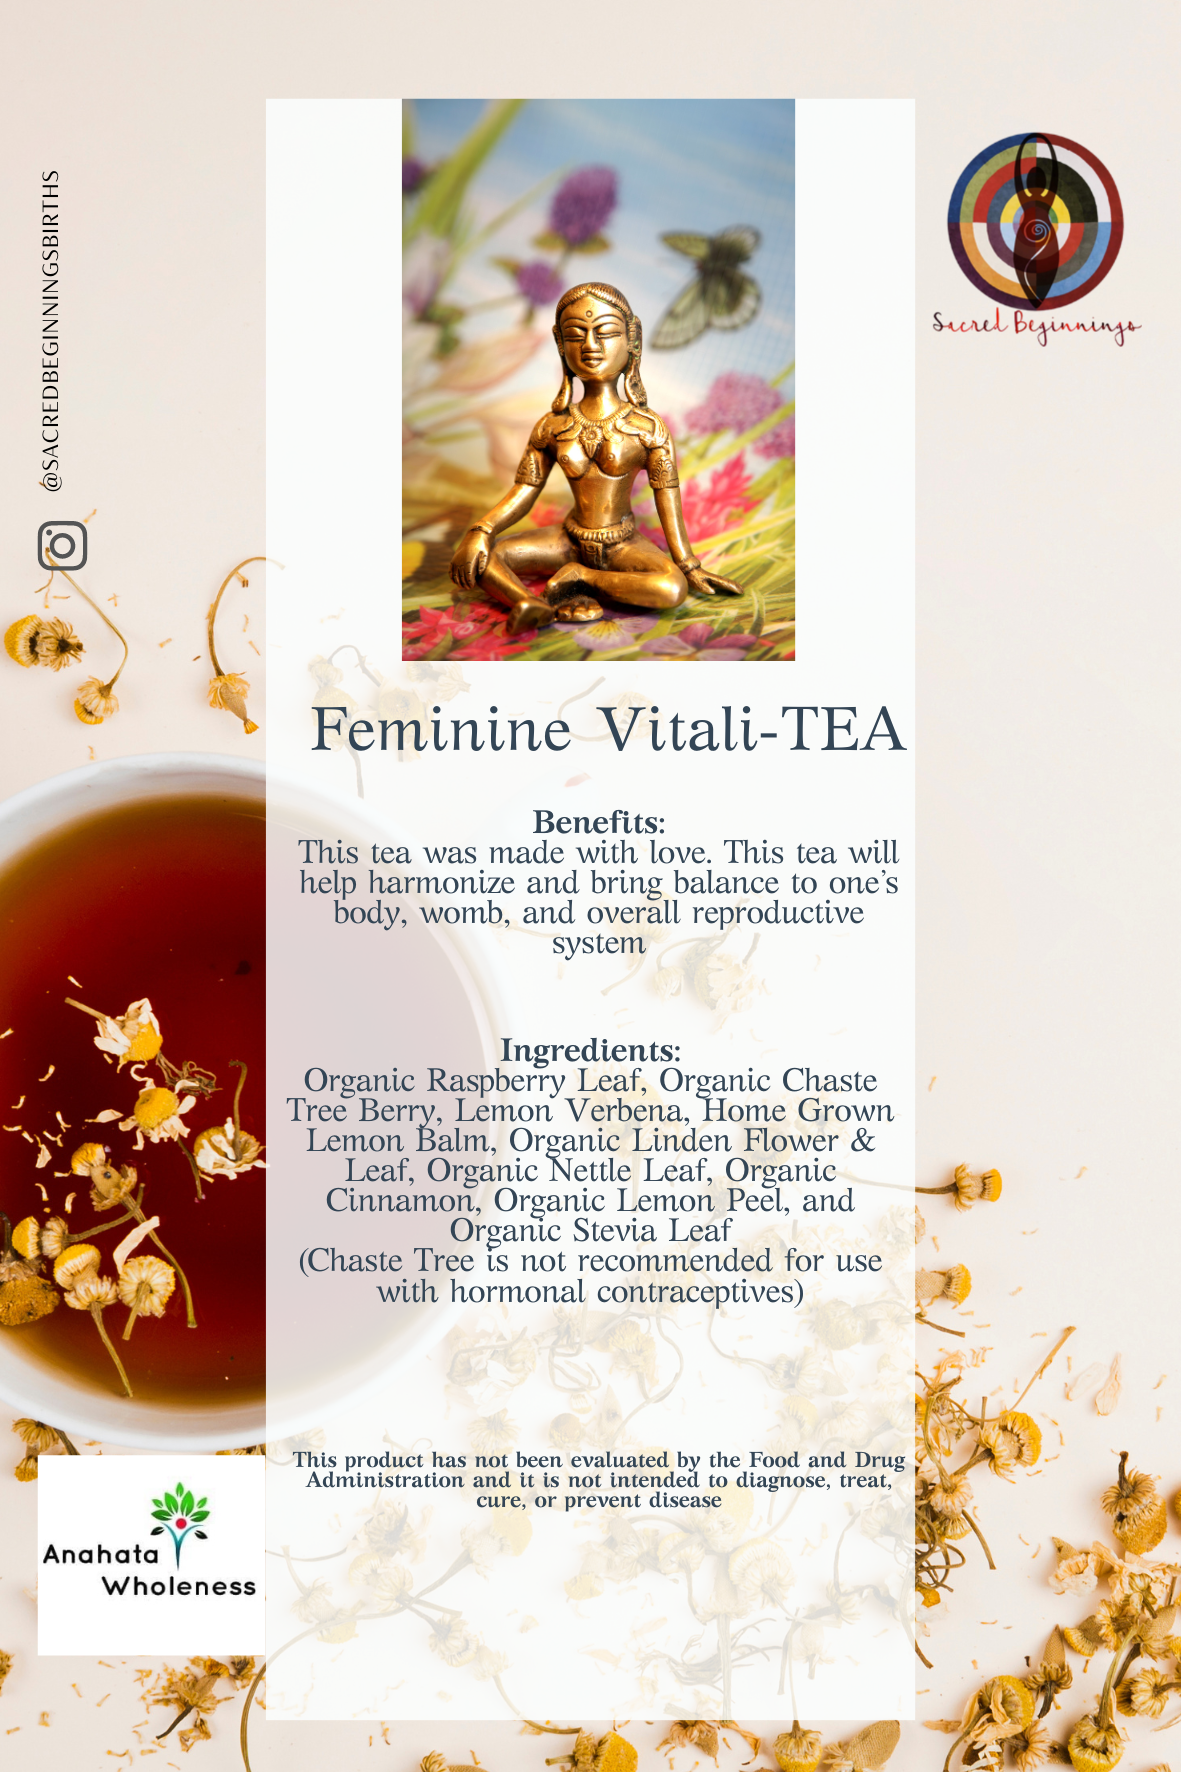 Feminine Vitali-TEA